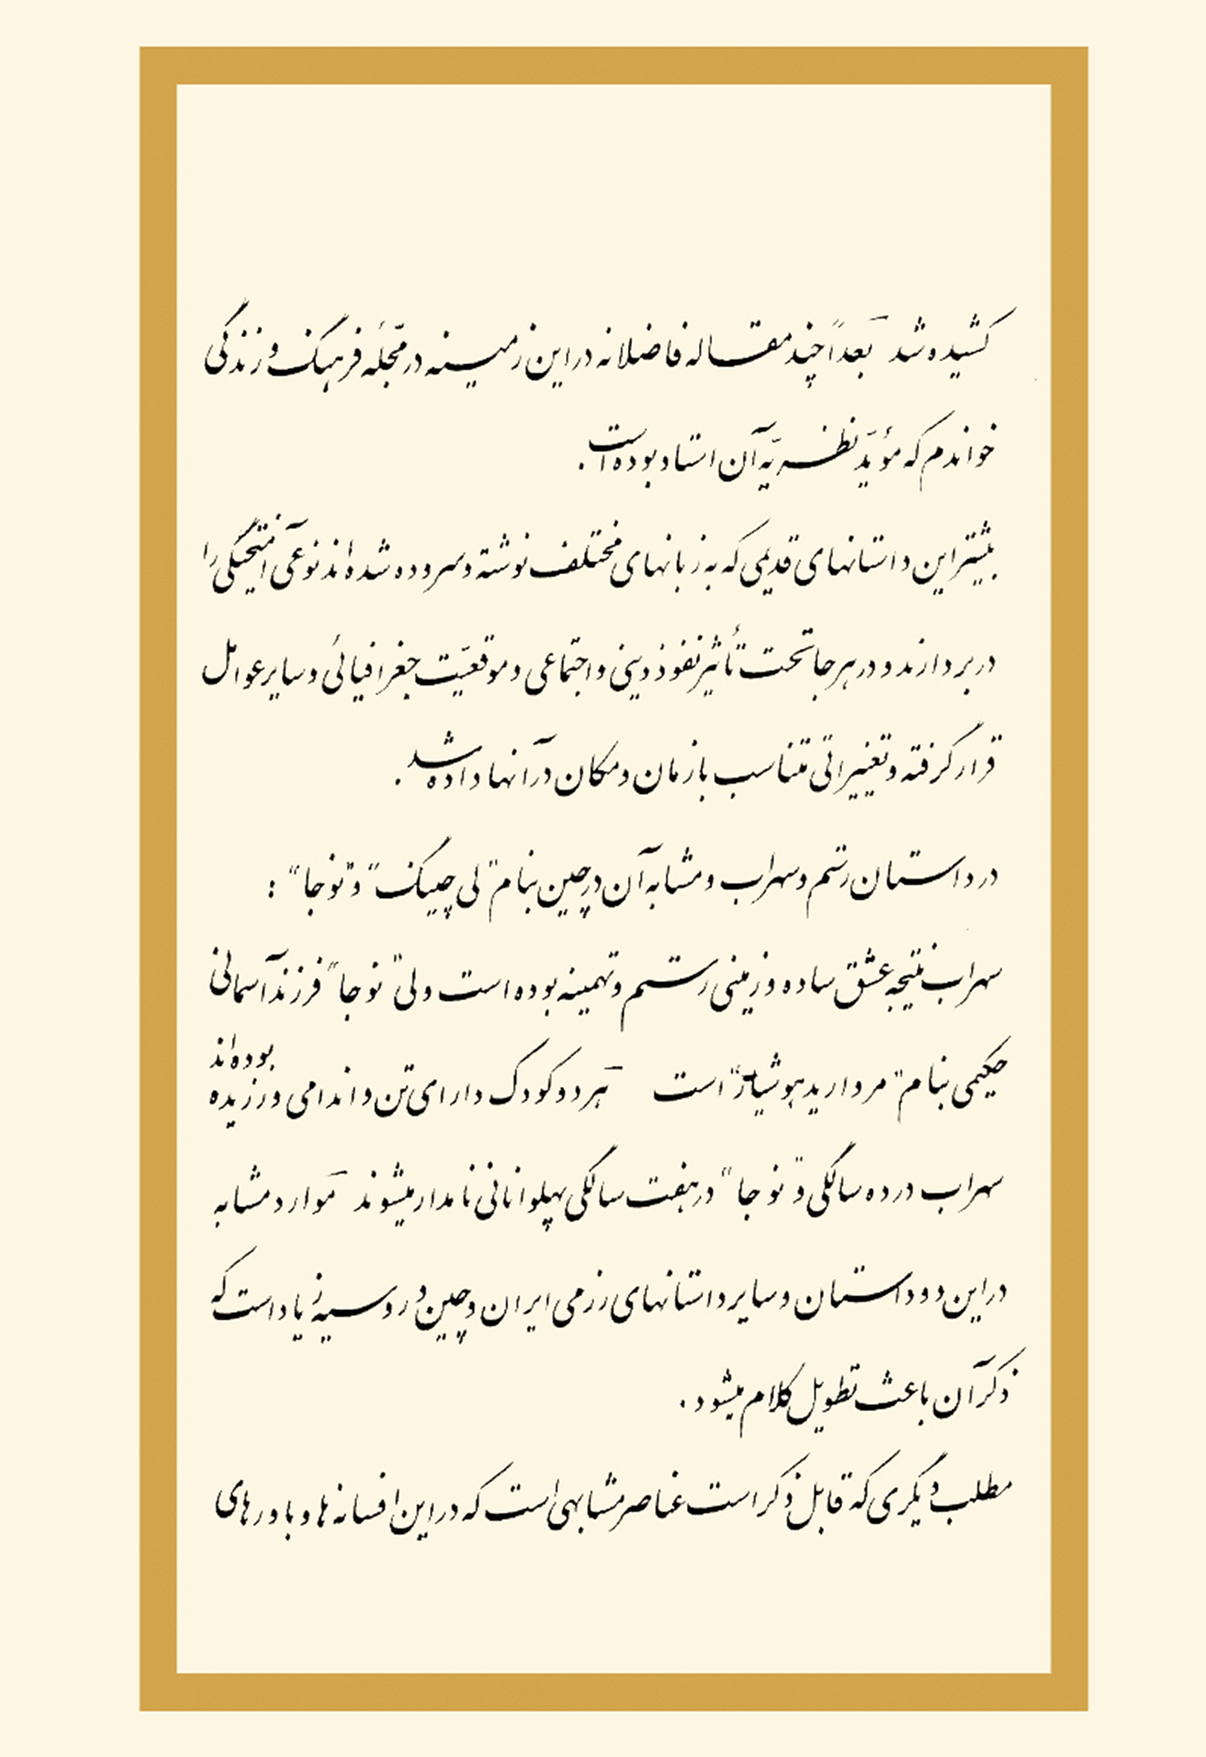 Layla and Majnun - Poetry by Nizami Ganjavi